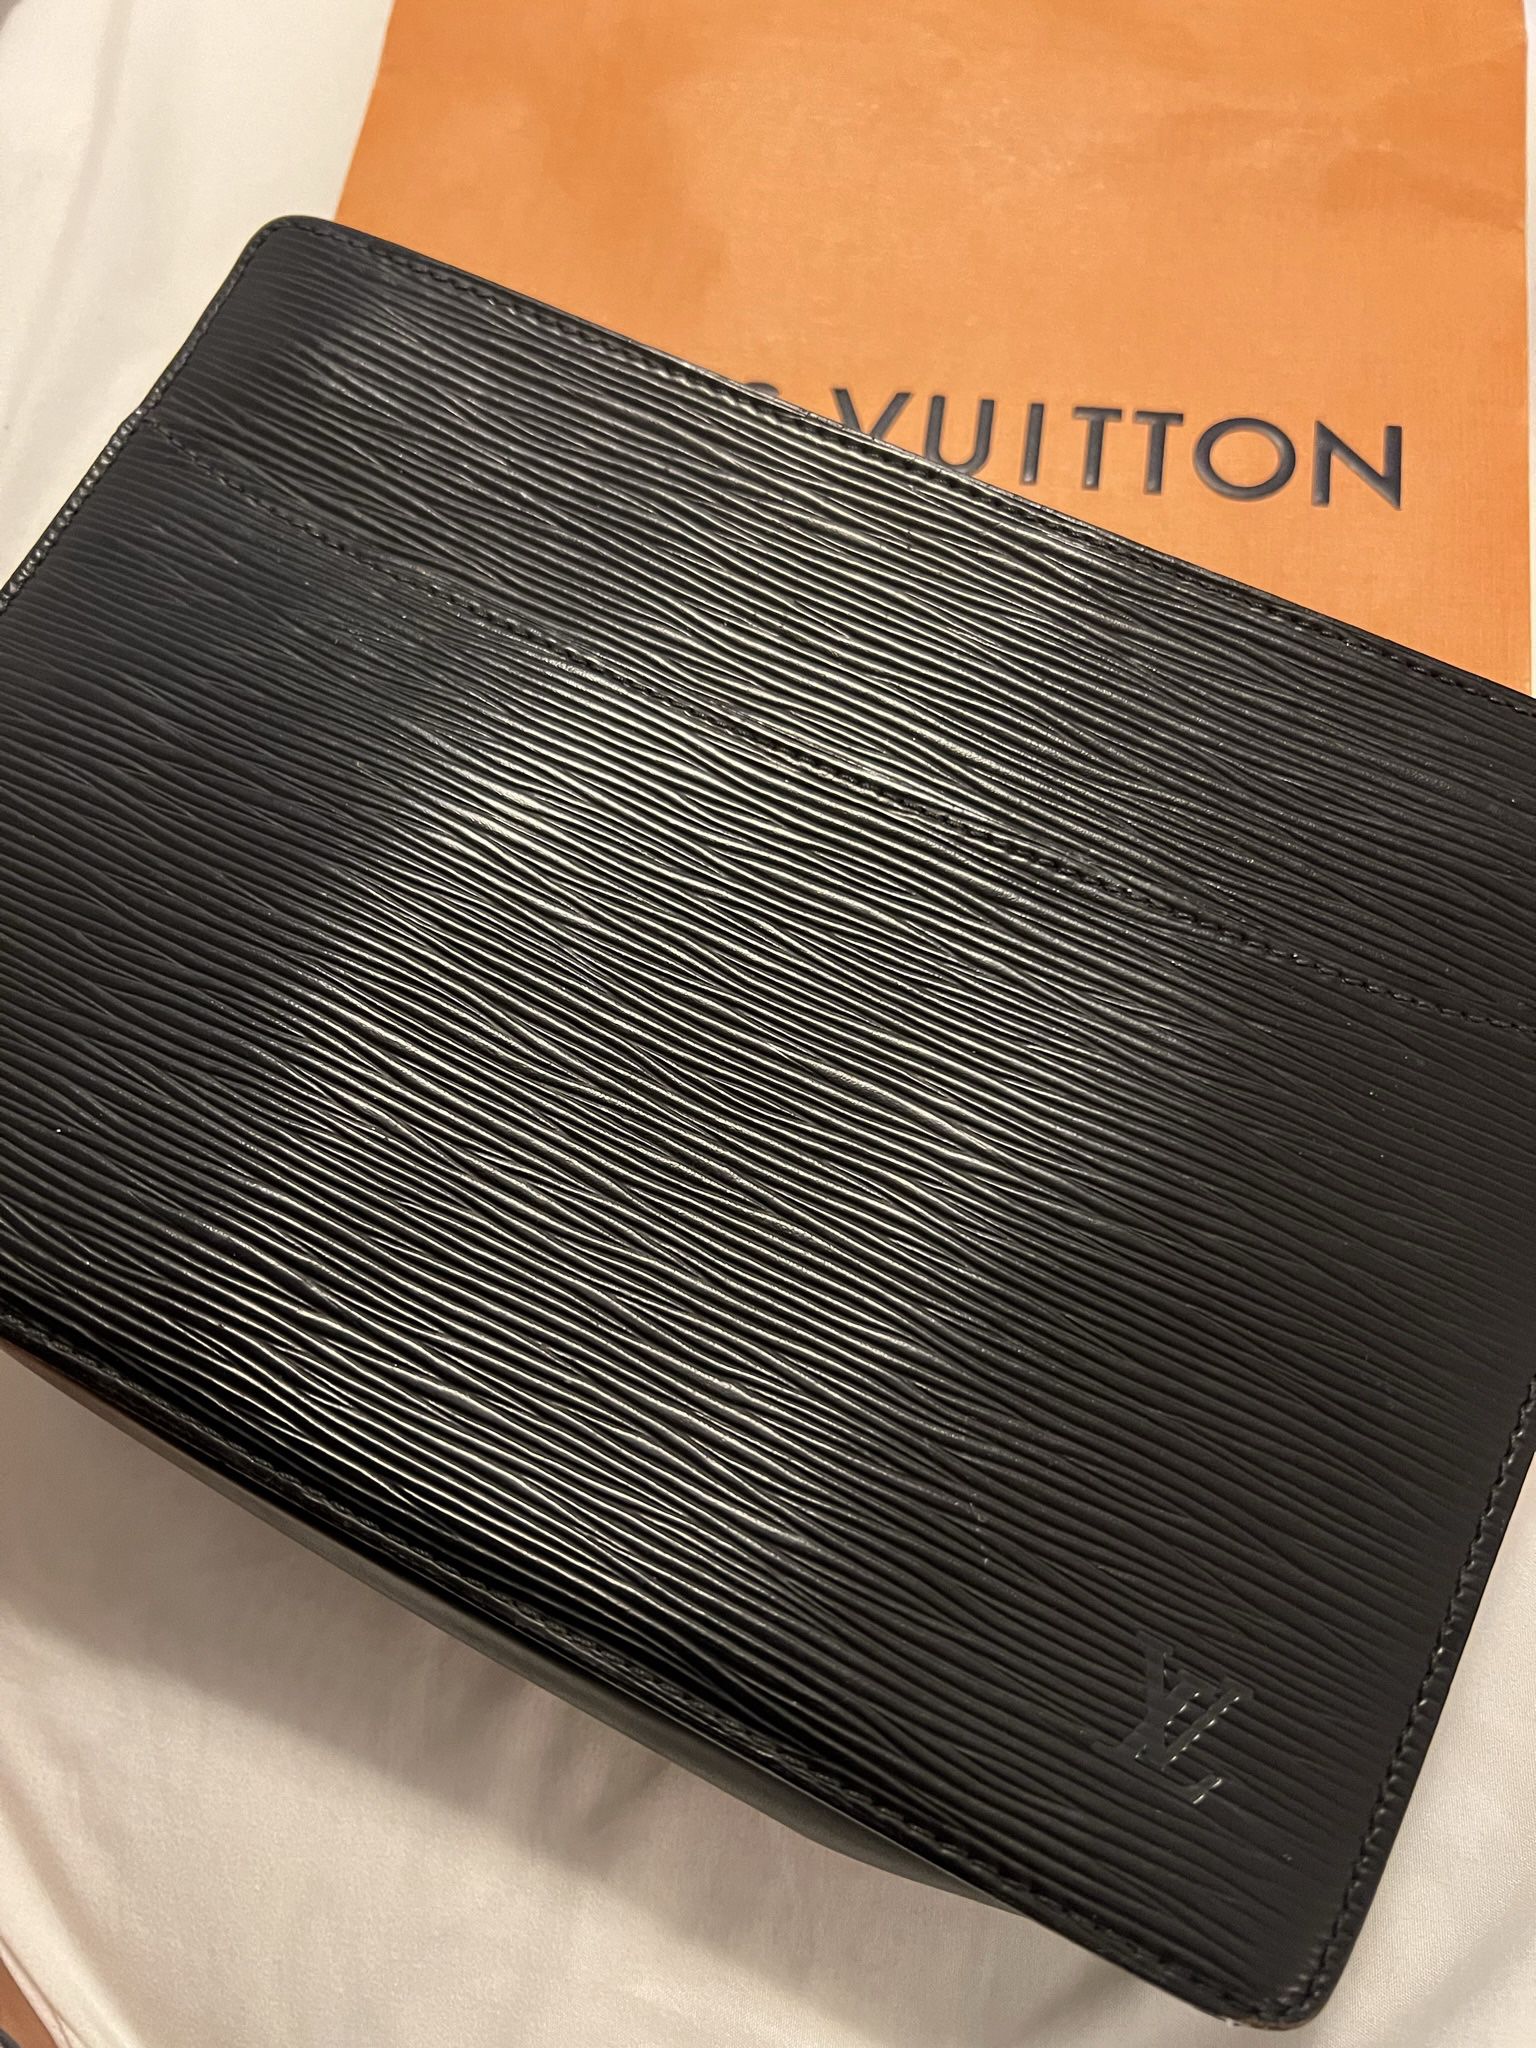 Authentic Louis Vuitton Monogram Canvas Deauville for Sale in Phoenix, AZ -  OfferUp